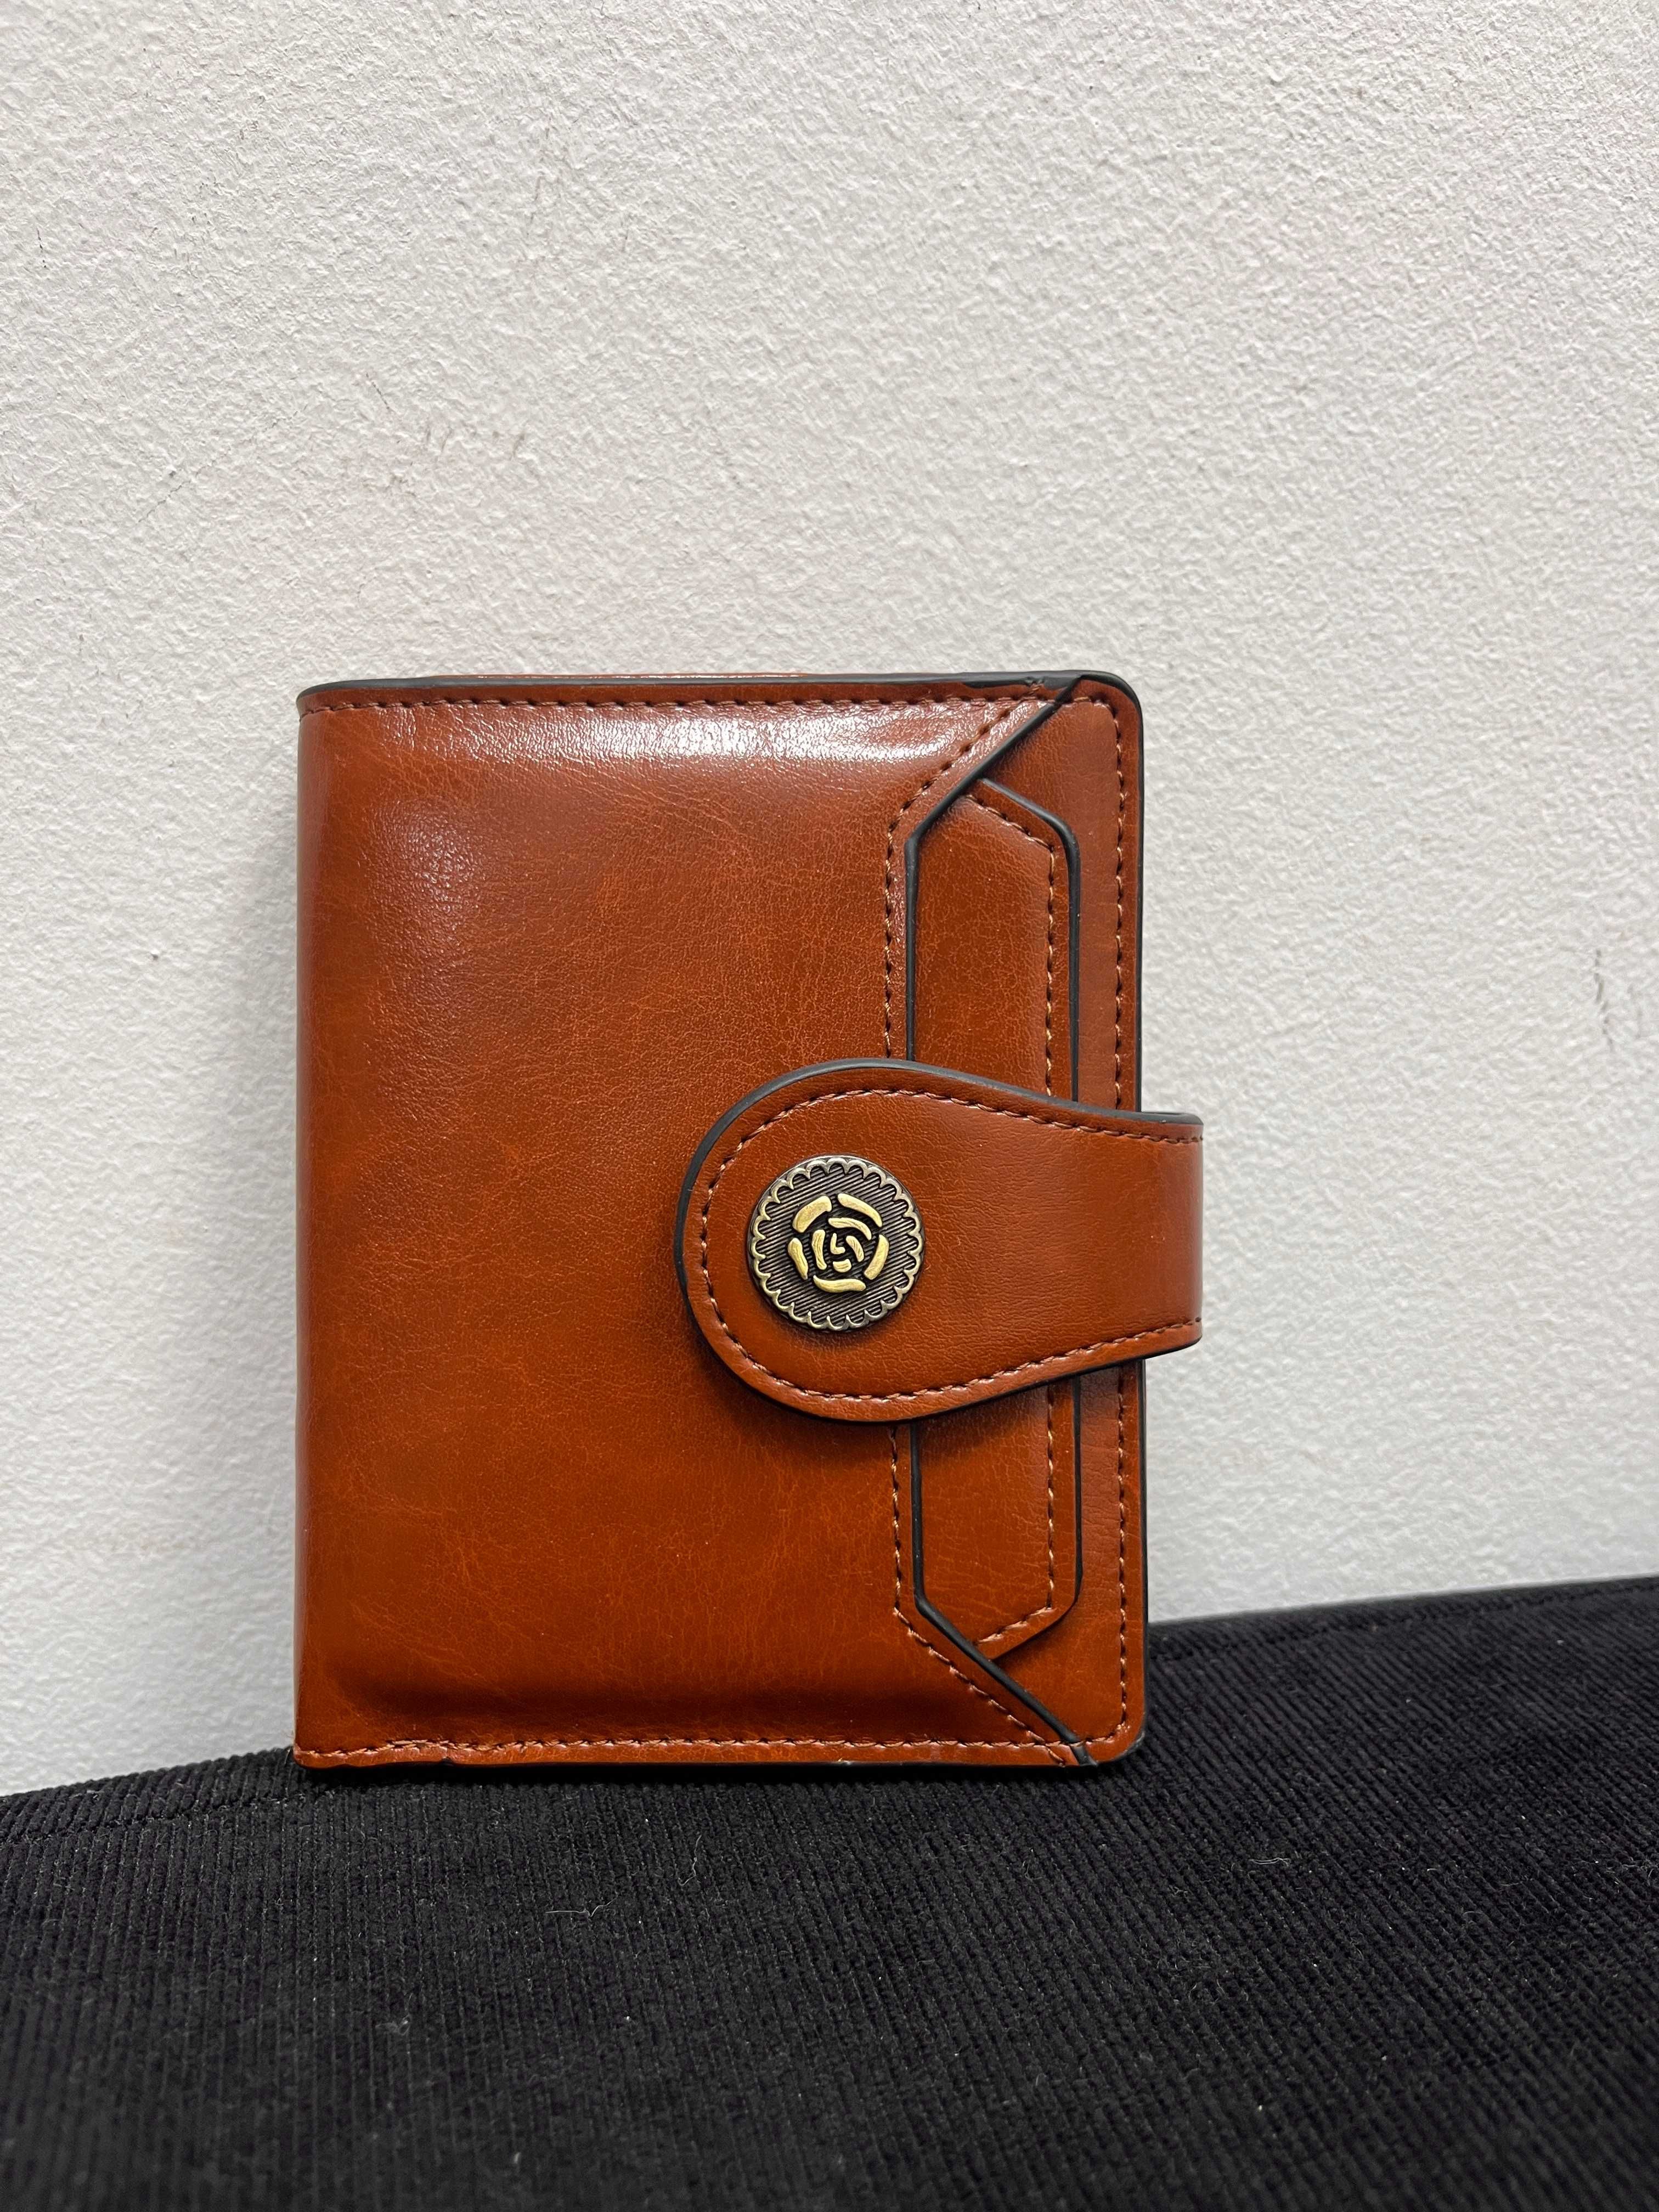 Damski brązowy portfel